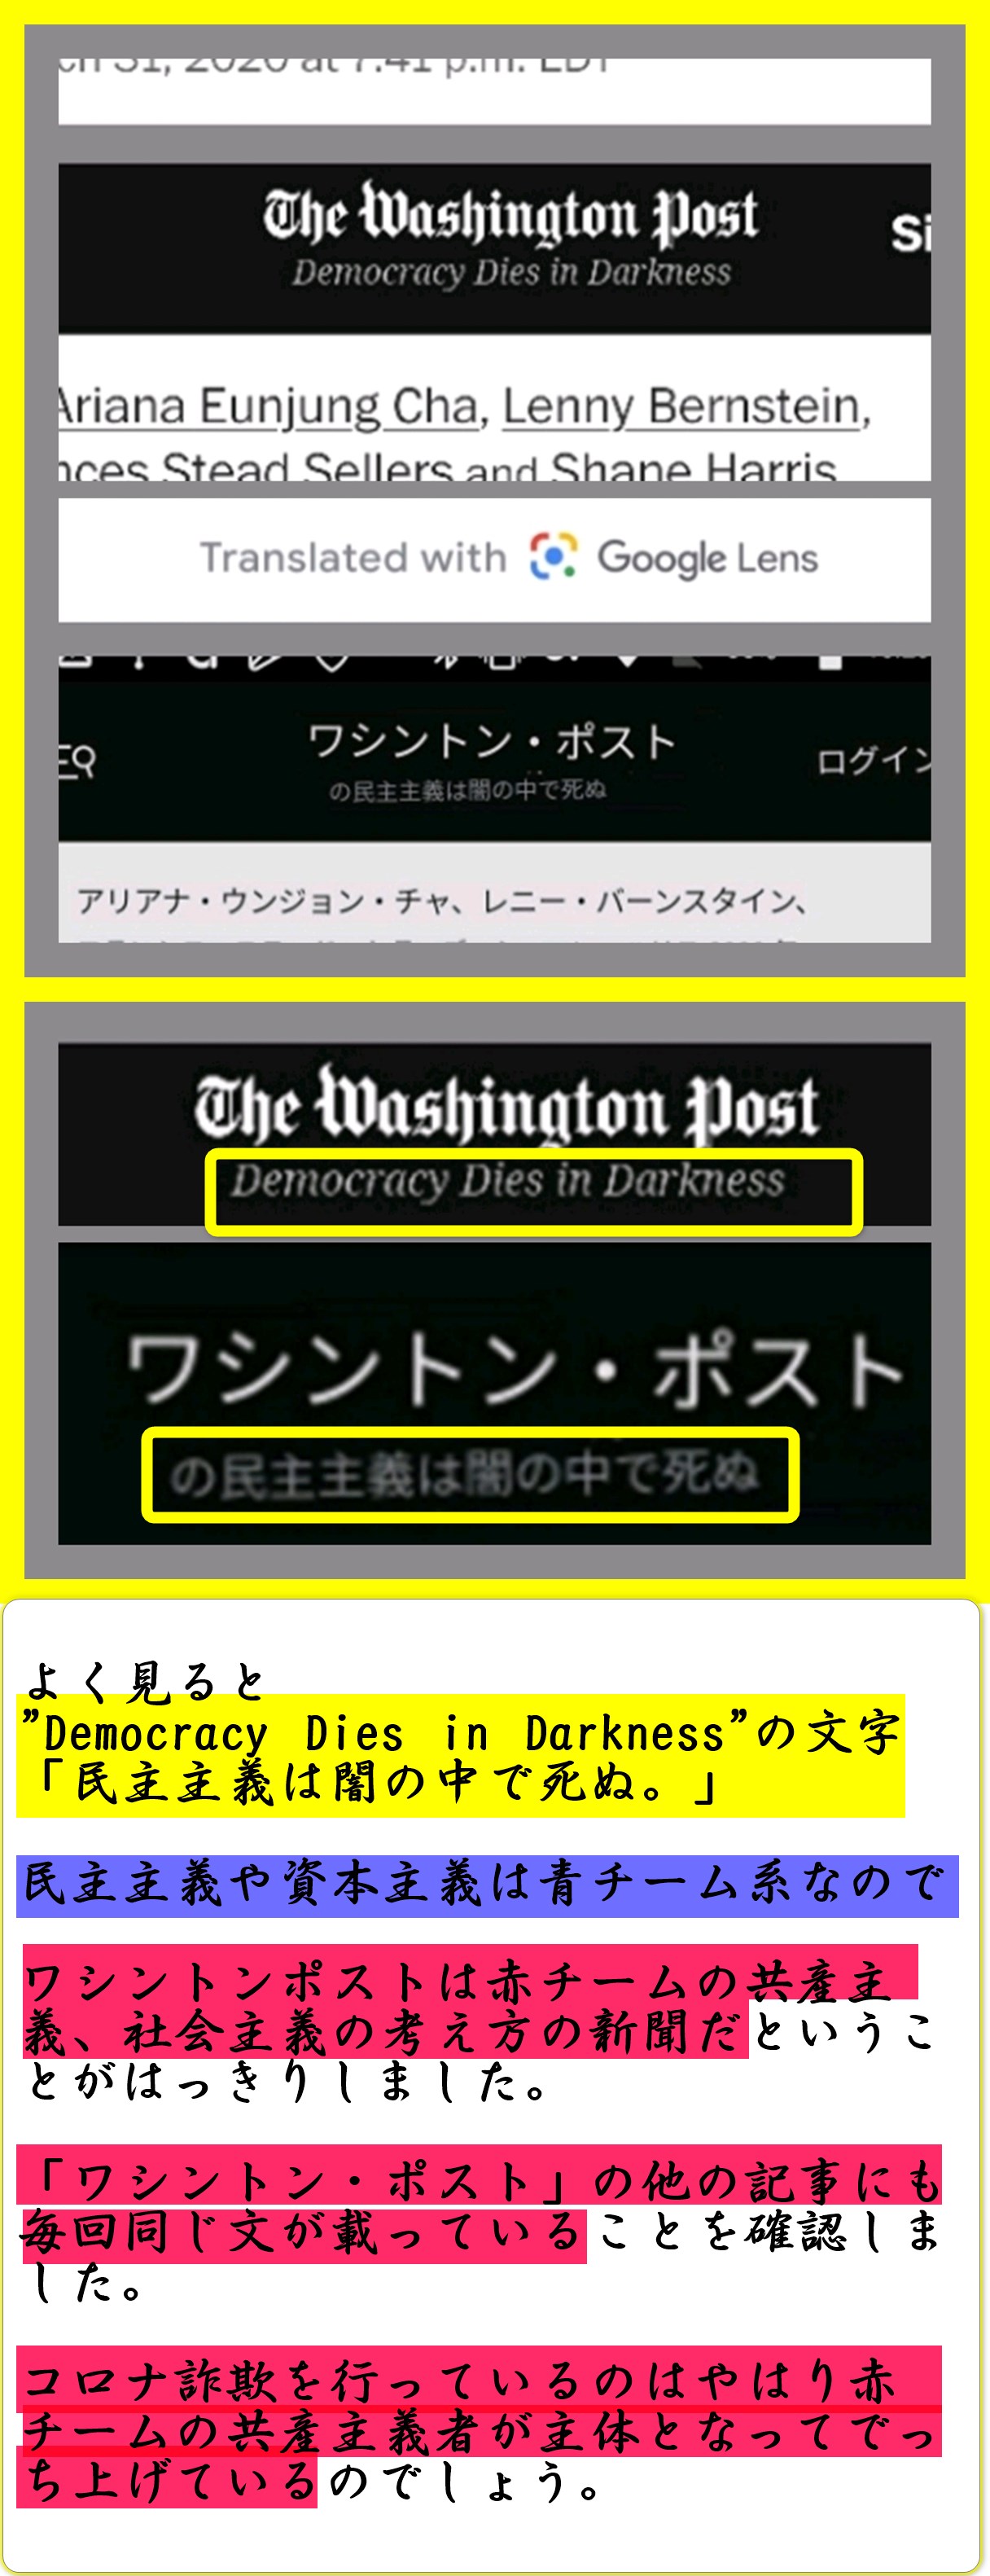 コ口ナをでっち上げていたマスゴミの一つのワシントンポストが「民主主義は闇の中に死ぬ」の文字。共産主義的な思想の新聞だとはっきりした。